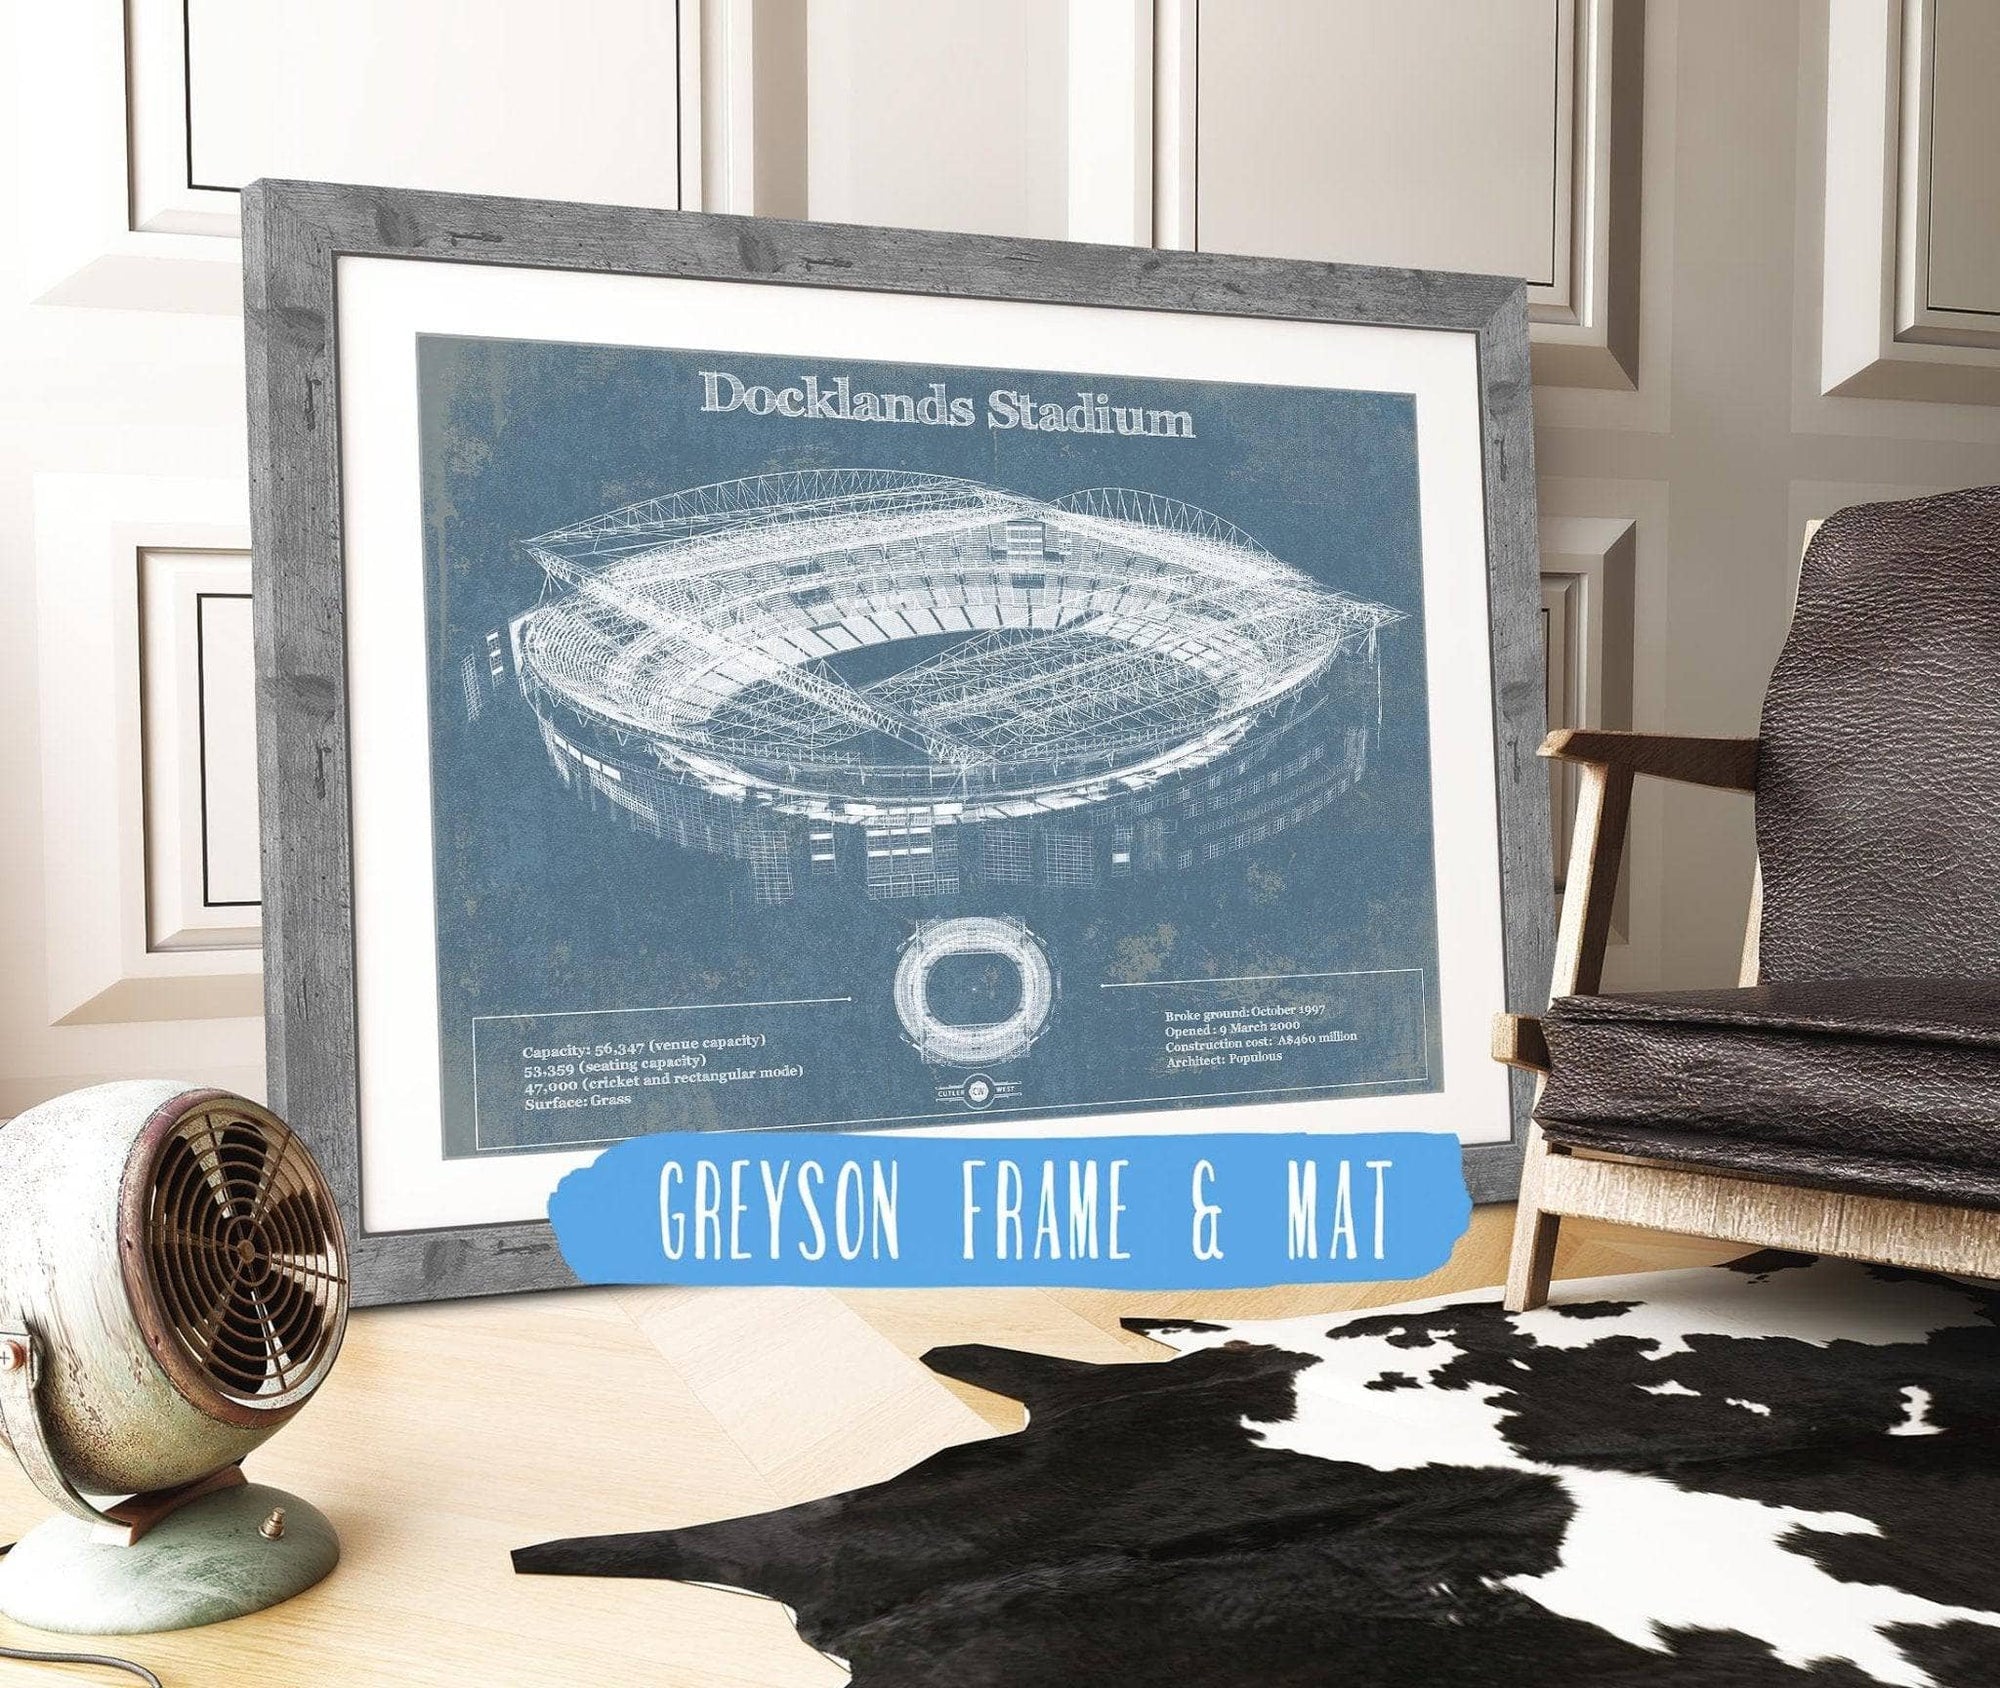 Cutler West Docklands Stadium (Marvel Stadium) Vintage Australian Football AFL Stadium Print